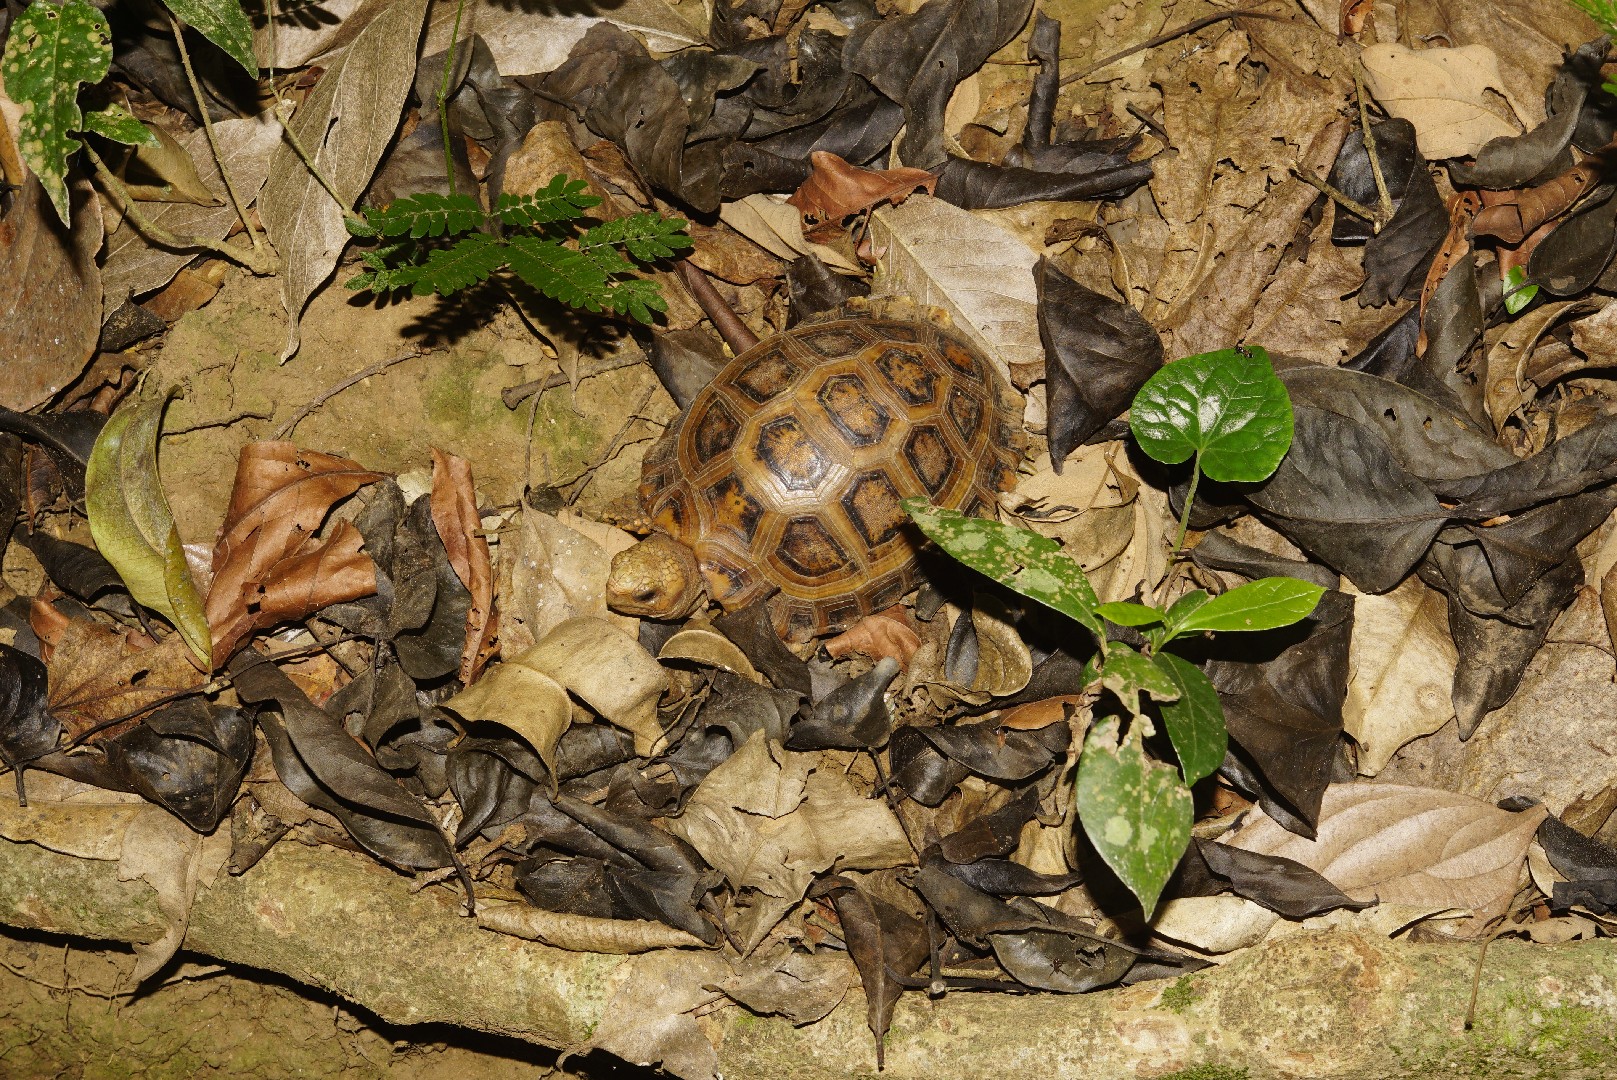 South asian tortoises (Indotestudo)